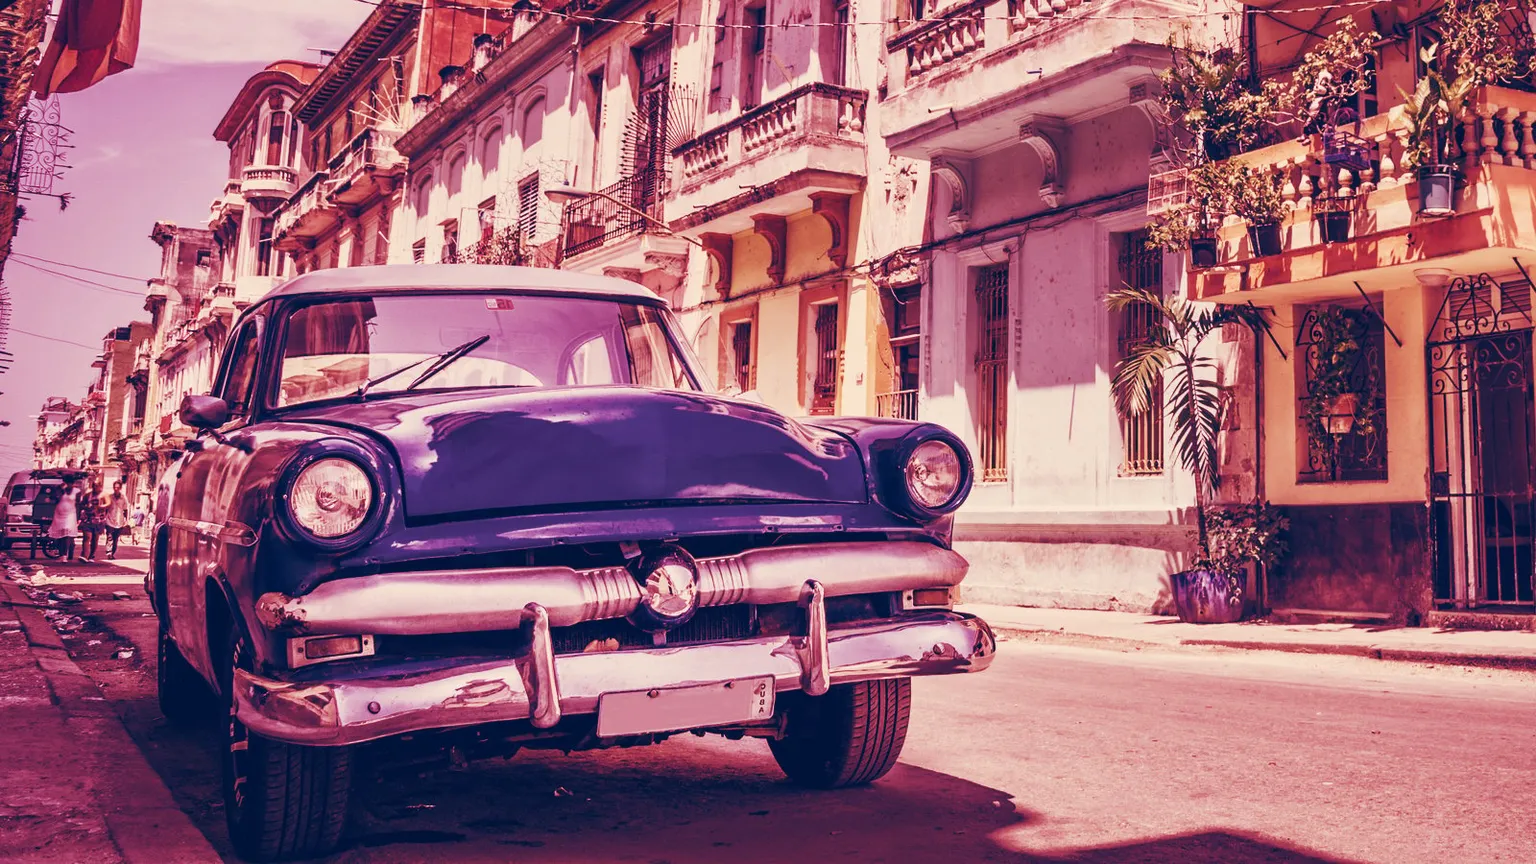 La economía de Cuba tiene muchas restricciones. Imagen: Shutterstock